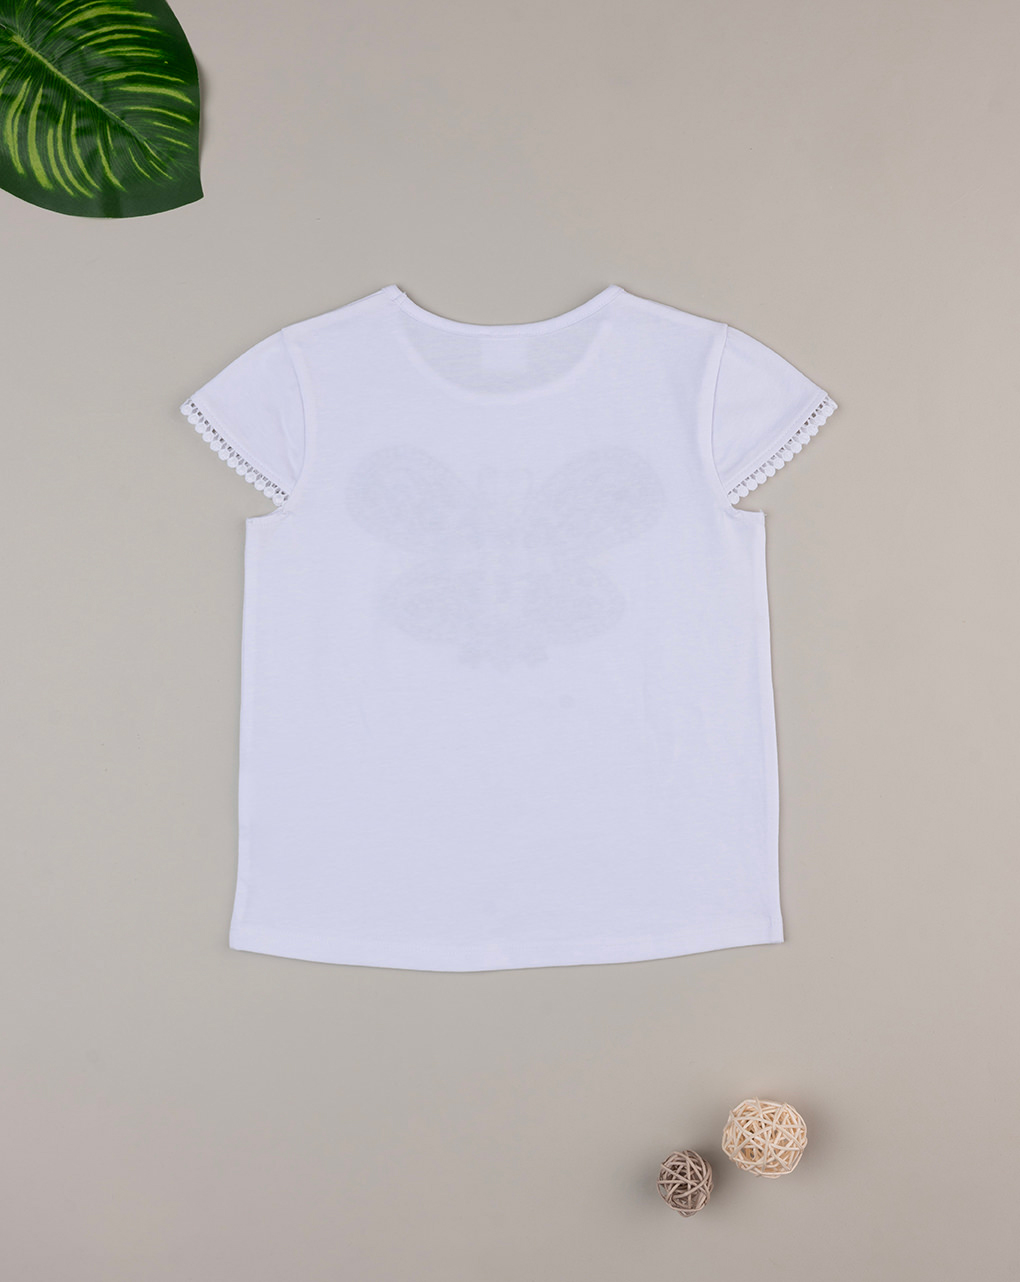 παιδικό t-shirt λευκό με πεταλούδα για κορίτσι - Prénatal